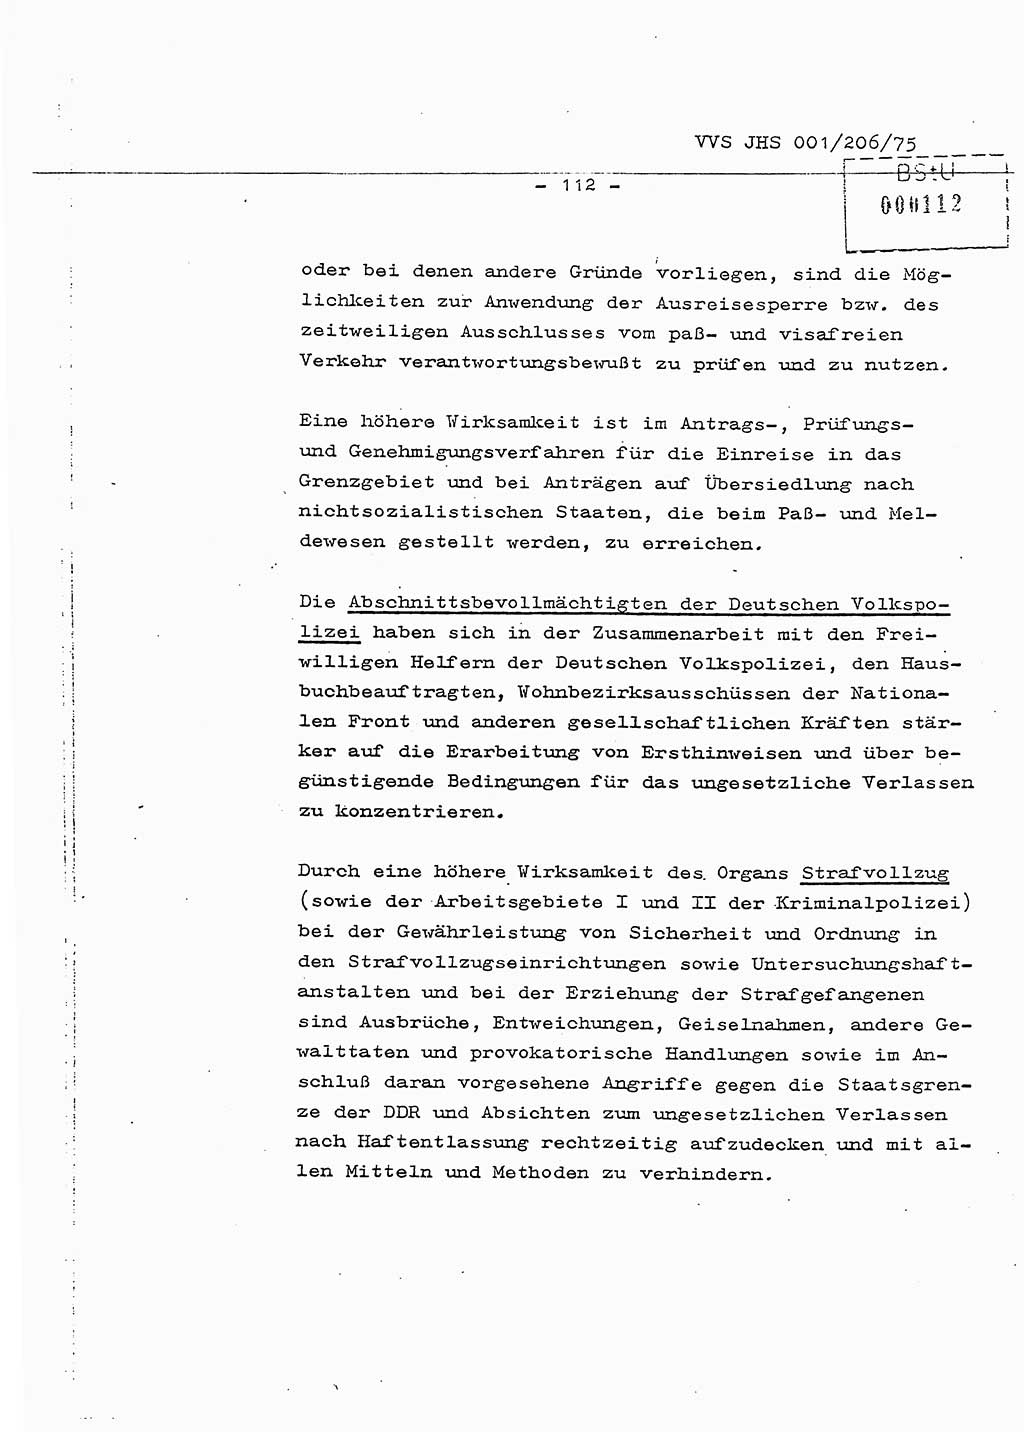 Dissertation Generalmajor Manfred Hummitzsch (Leiter der BV Leipzig), Generalmajor Heinz Fiedler (HA Ⅵ), Oberst Rolf Fister (HA Ⅸ), Ministerium für Staatssicherheit (MfS) [Deutsche Demokratische Republik (DDR)], Juristische Hochschule (JHS), Vertrauliche Verschlußsache (VVS) 001-206/75, Potsdam 1975, Seite 112 (Diss. MfS DDR JHS VVS 001-206/75 1975, S. 112)